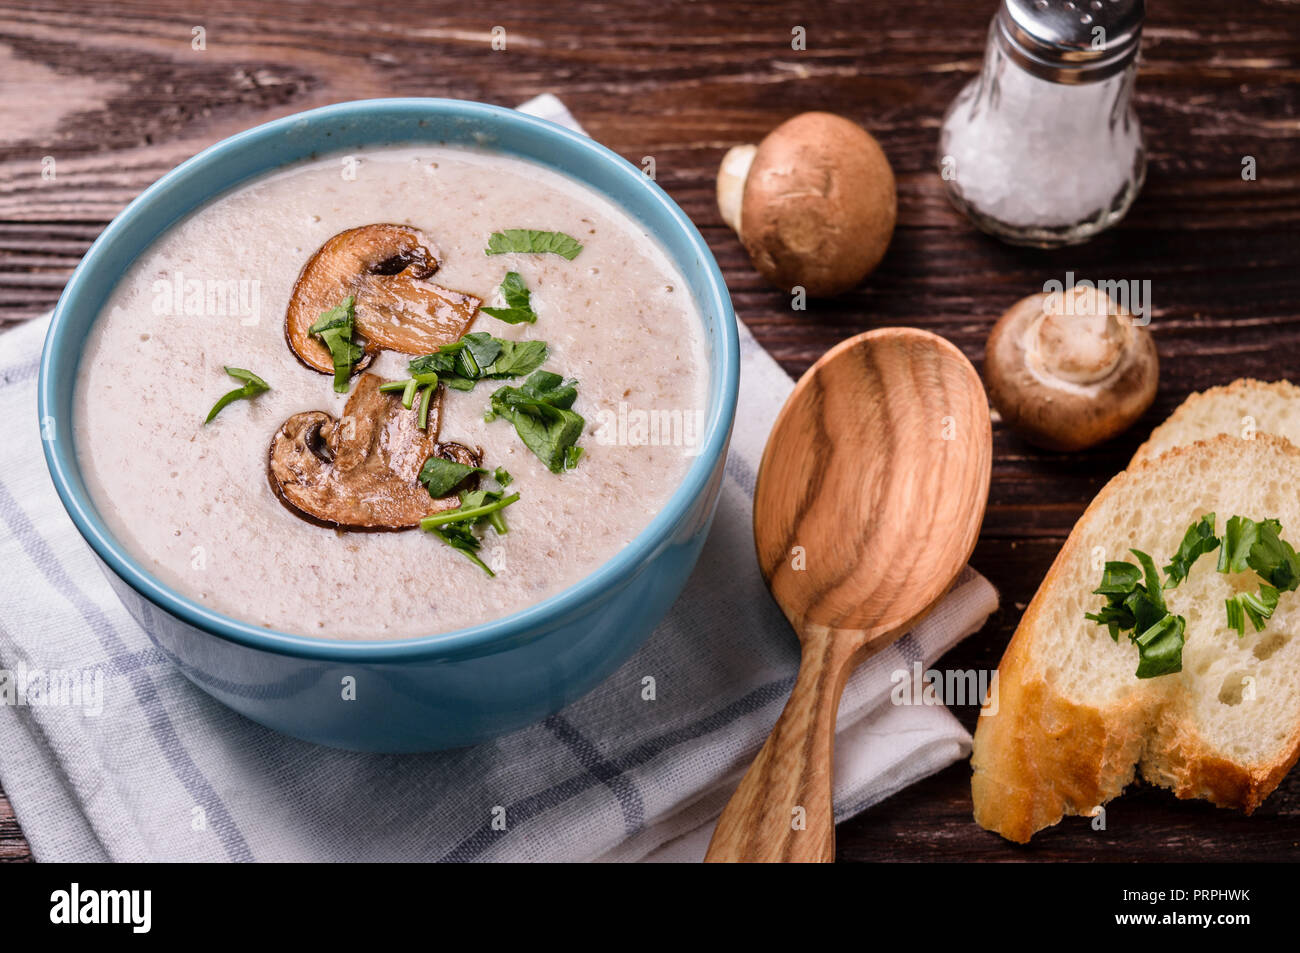 Delicious champignon mushroom cream soup puree on rustic wooden table. Stock Photo